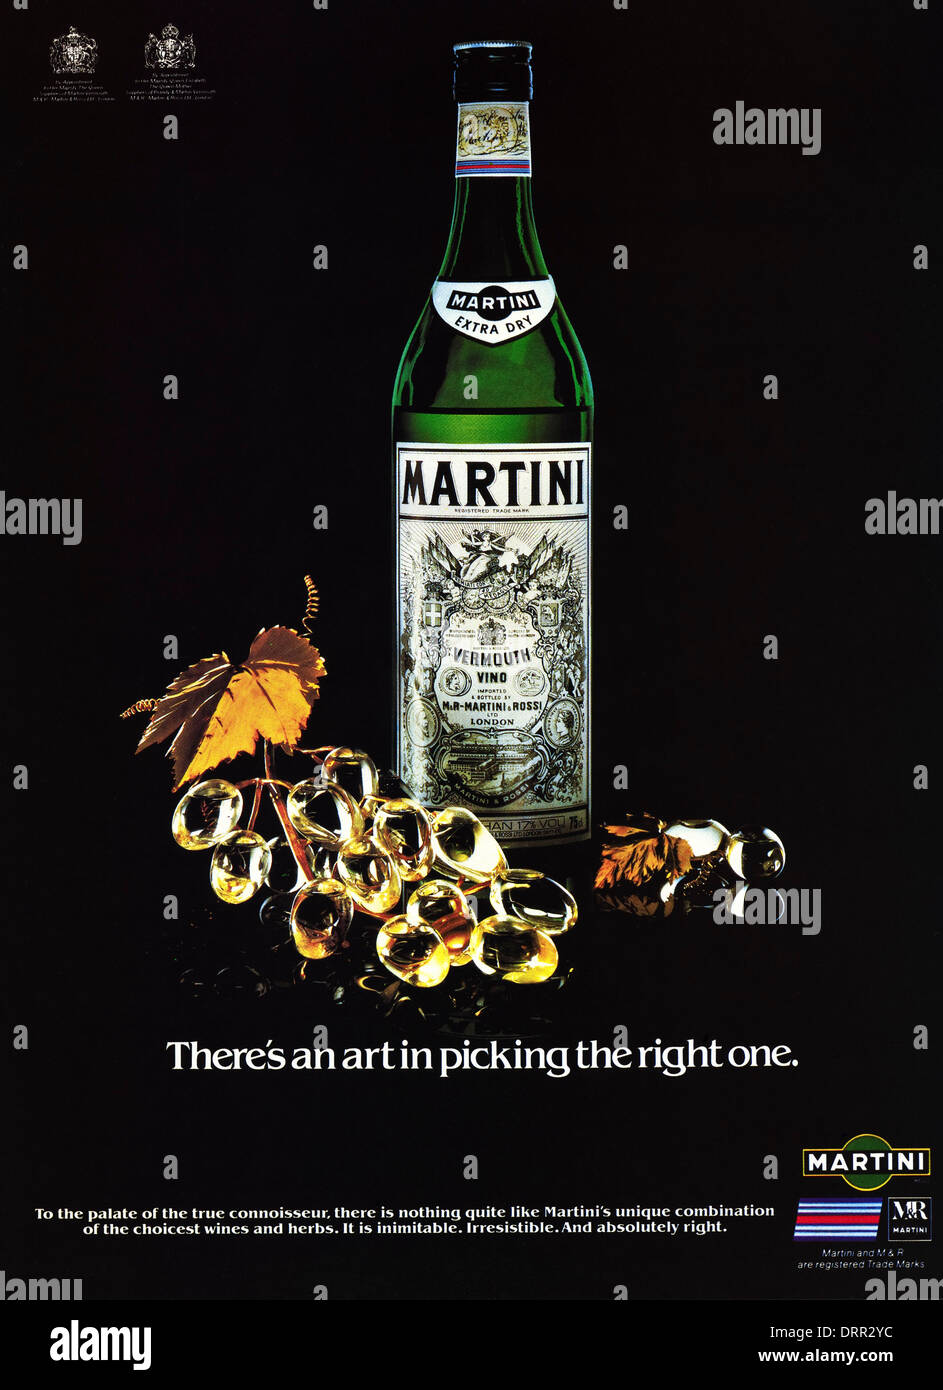 1980er Jahre Magazin Werbung Werbung Werbung MARTINI Royal auf Voranmeldung, ca. 1983 Stockfoto